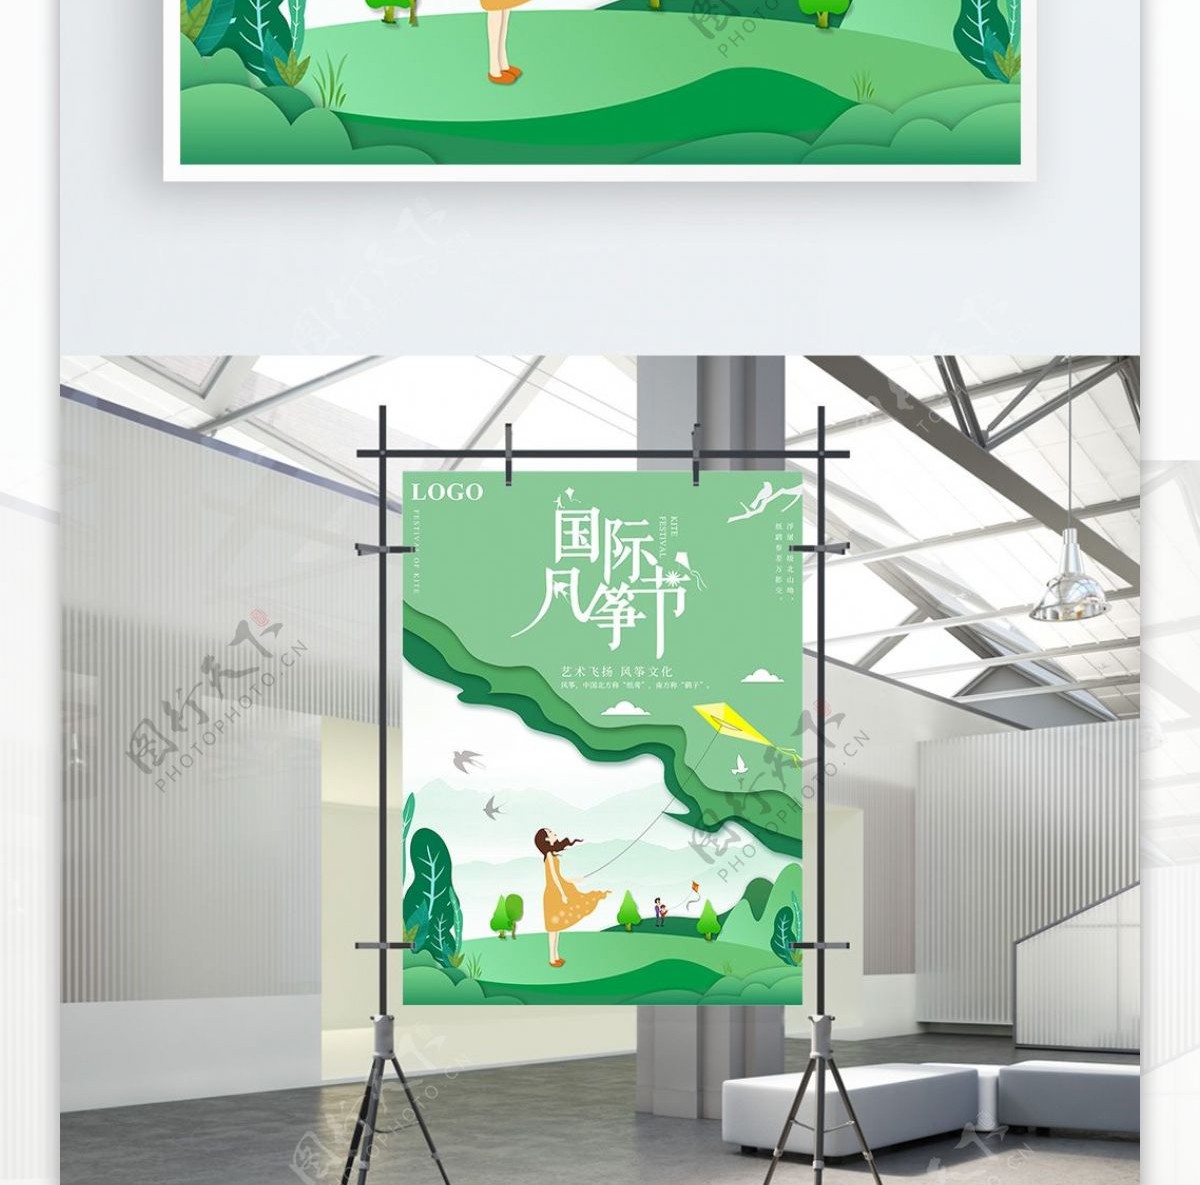 原创剪纸微立体国际风筝节宣传海报